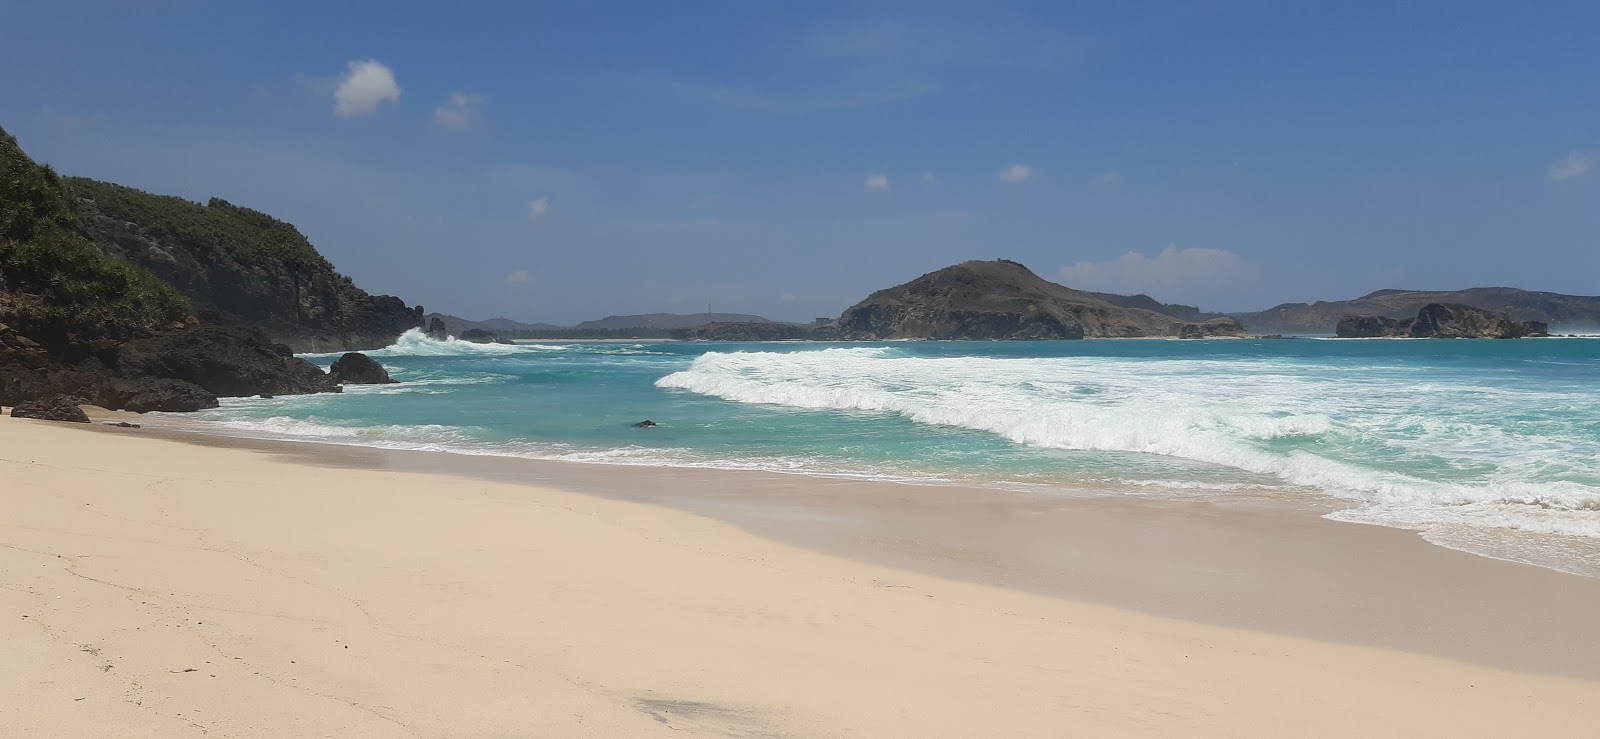 Fotografie cu Hidden Beach - locul popular printre cunoscătorii de relaxare